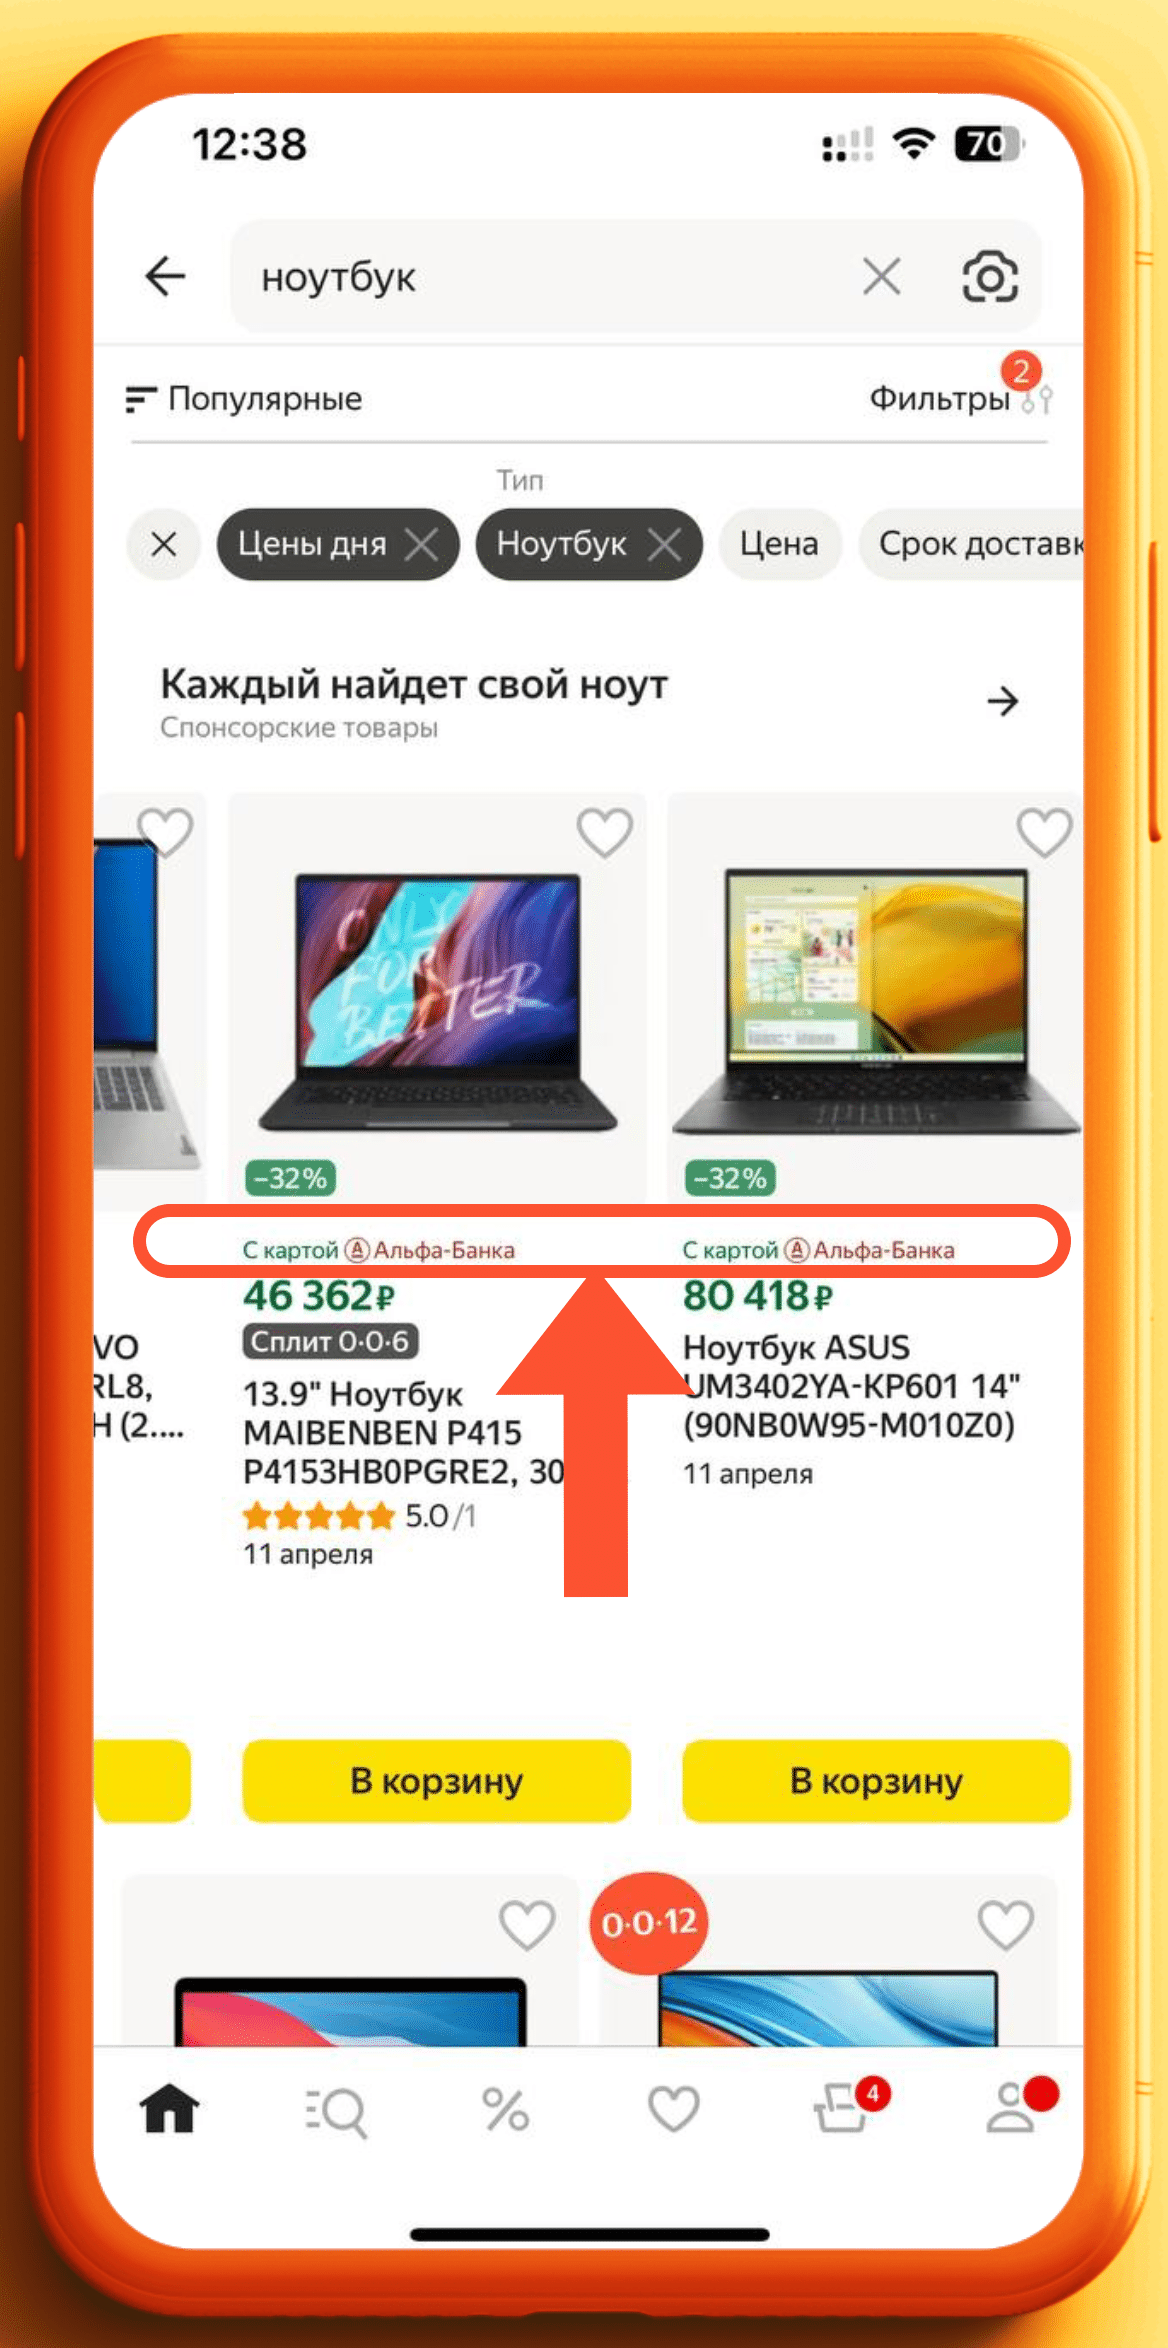 Выбор ноутбука со скидкой от Альфа банка на Яндекс Маркете